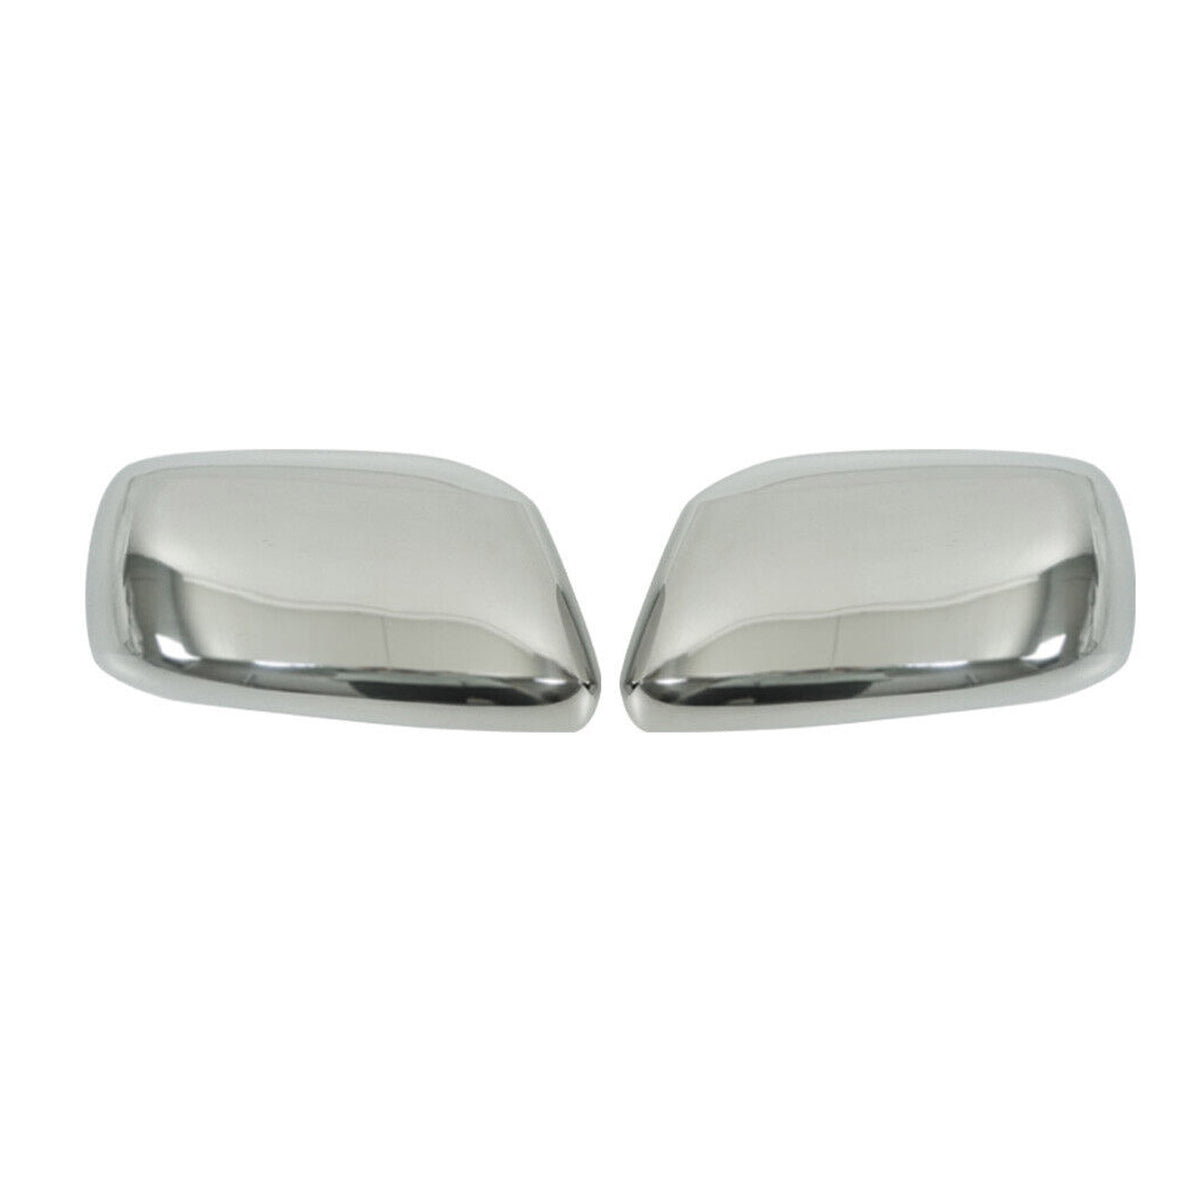 Spiegelkappen Spiegelabdeckung für Nissan Frontier 2011-2015 x2 Edelstahl Silber